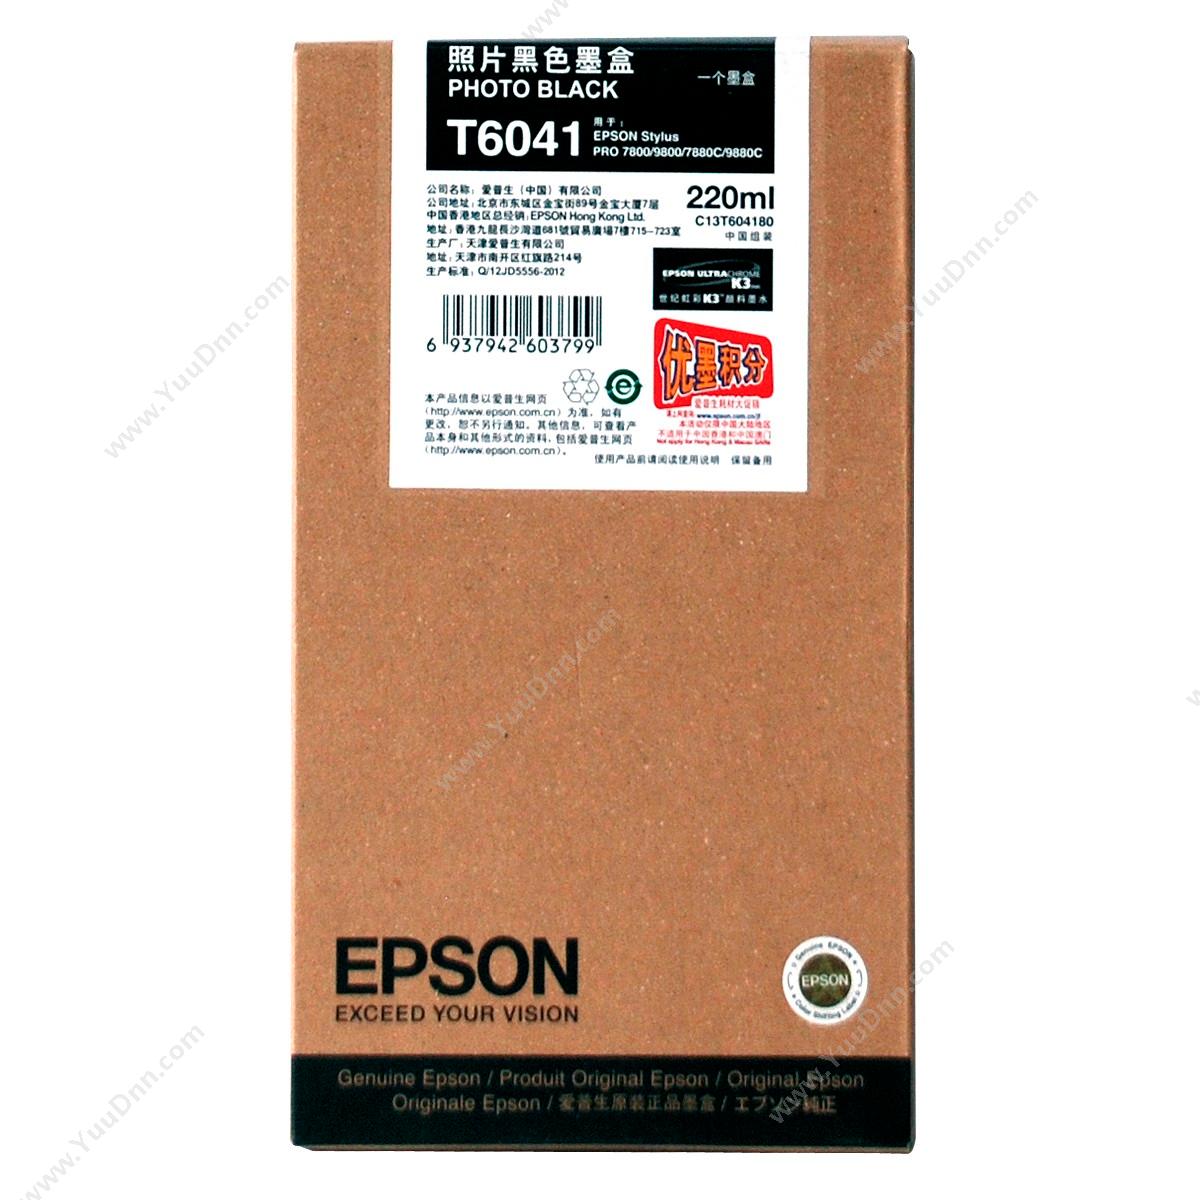 爱普生 Epson7880/9880照片黑墨（C13T604180）墨盒